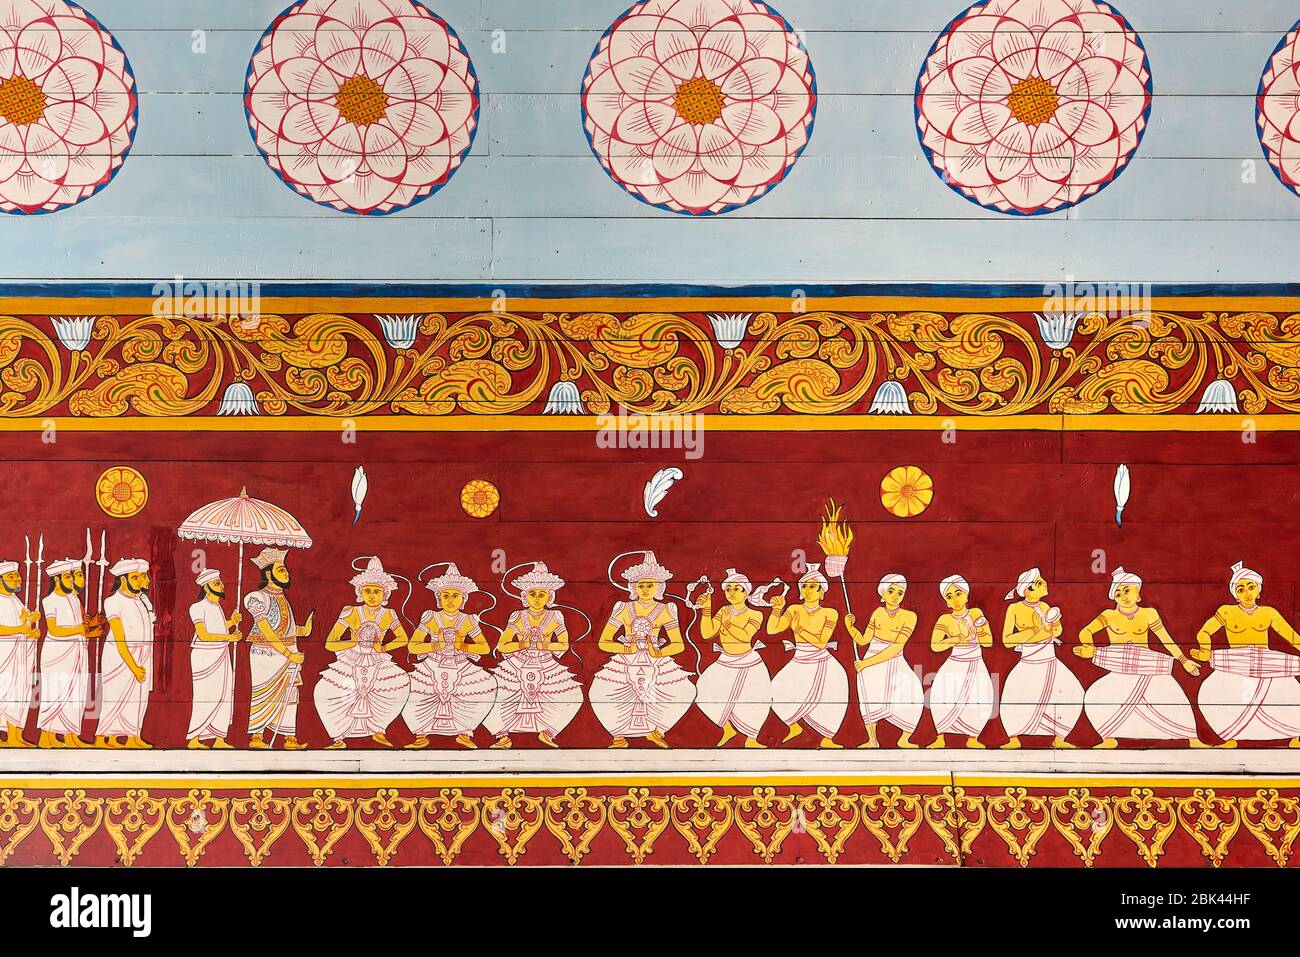 Dipinti colorati sulle pareti del Tempio Relico del dente Sacro a Kandy, Sri Lanka, raffiguranti ballerini e figure storiche, raccontando la storia della t. Foto Stock